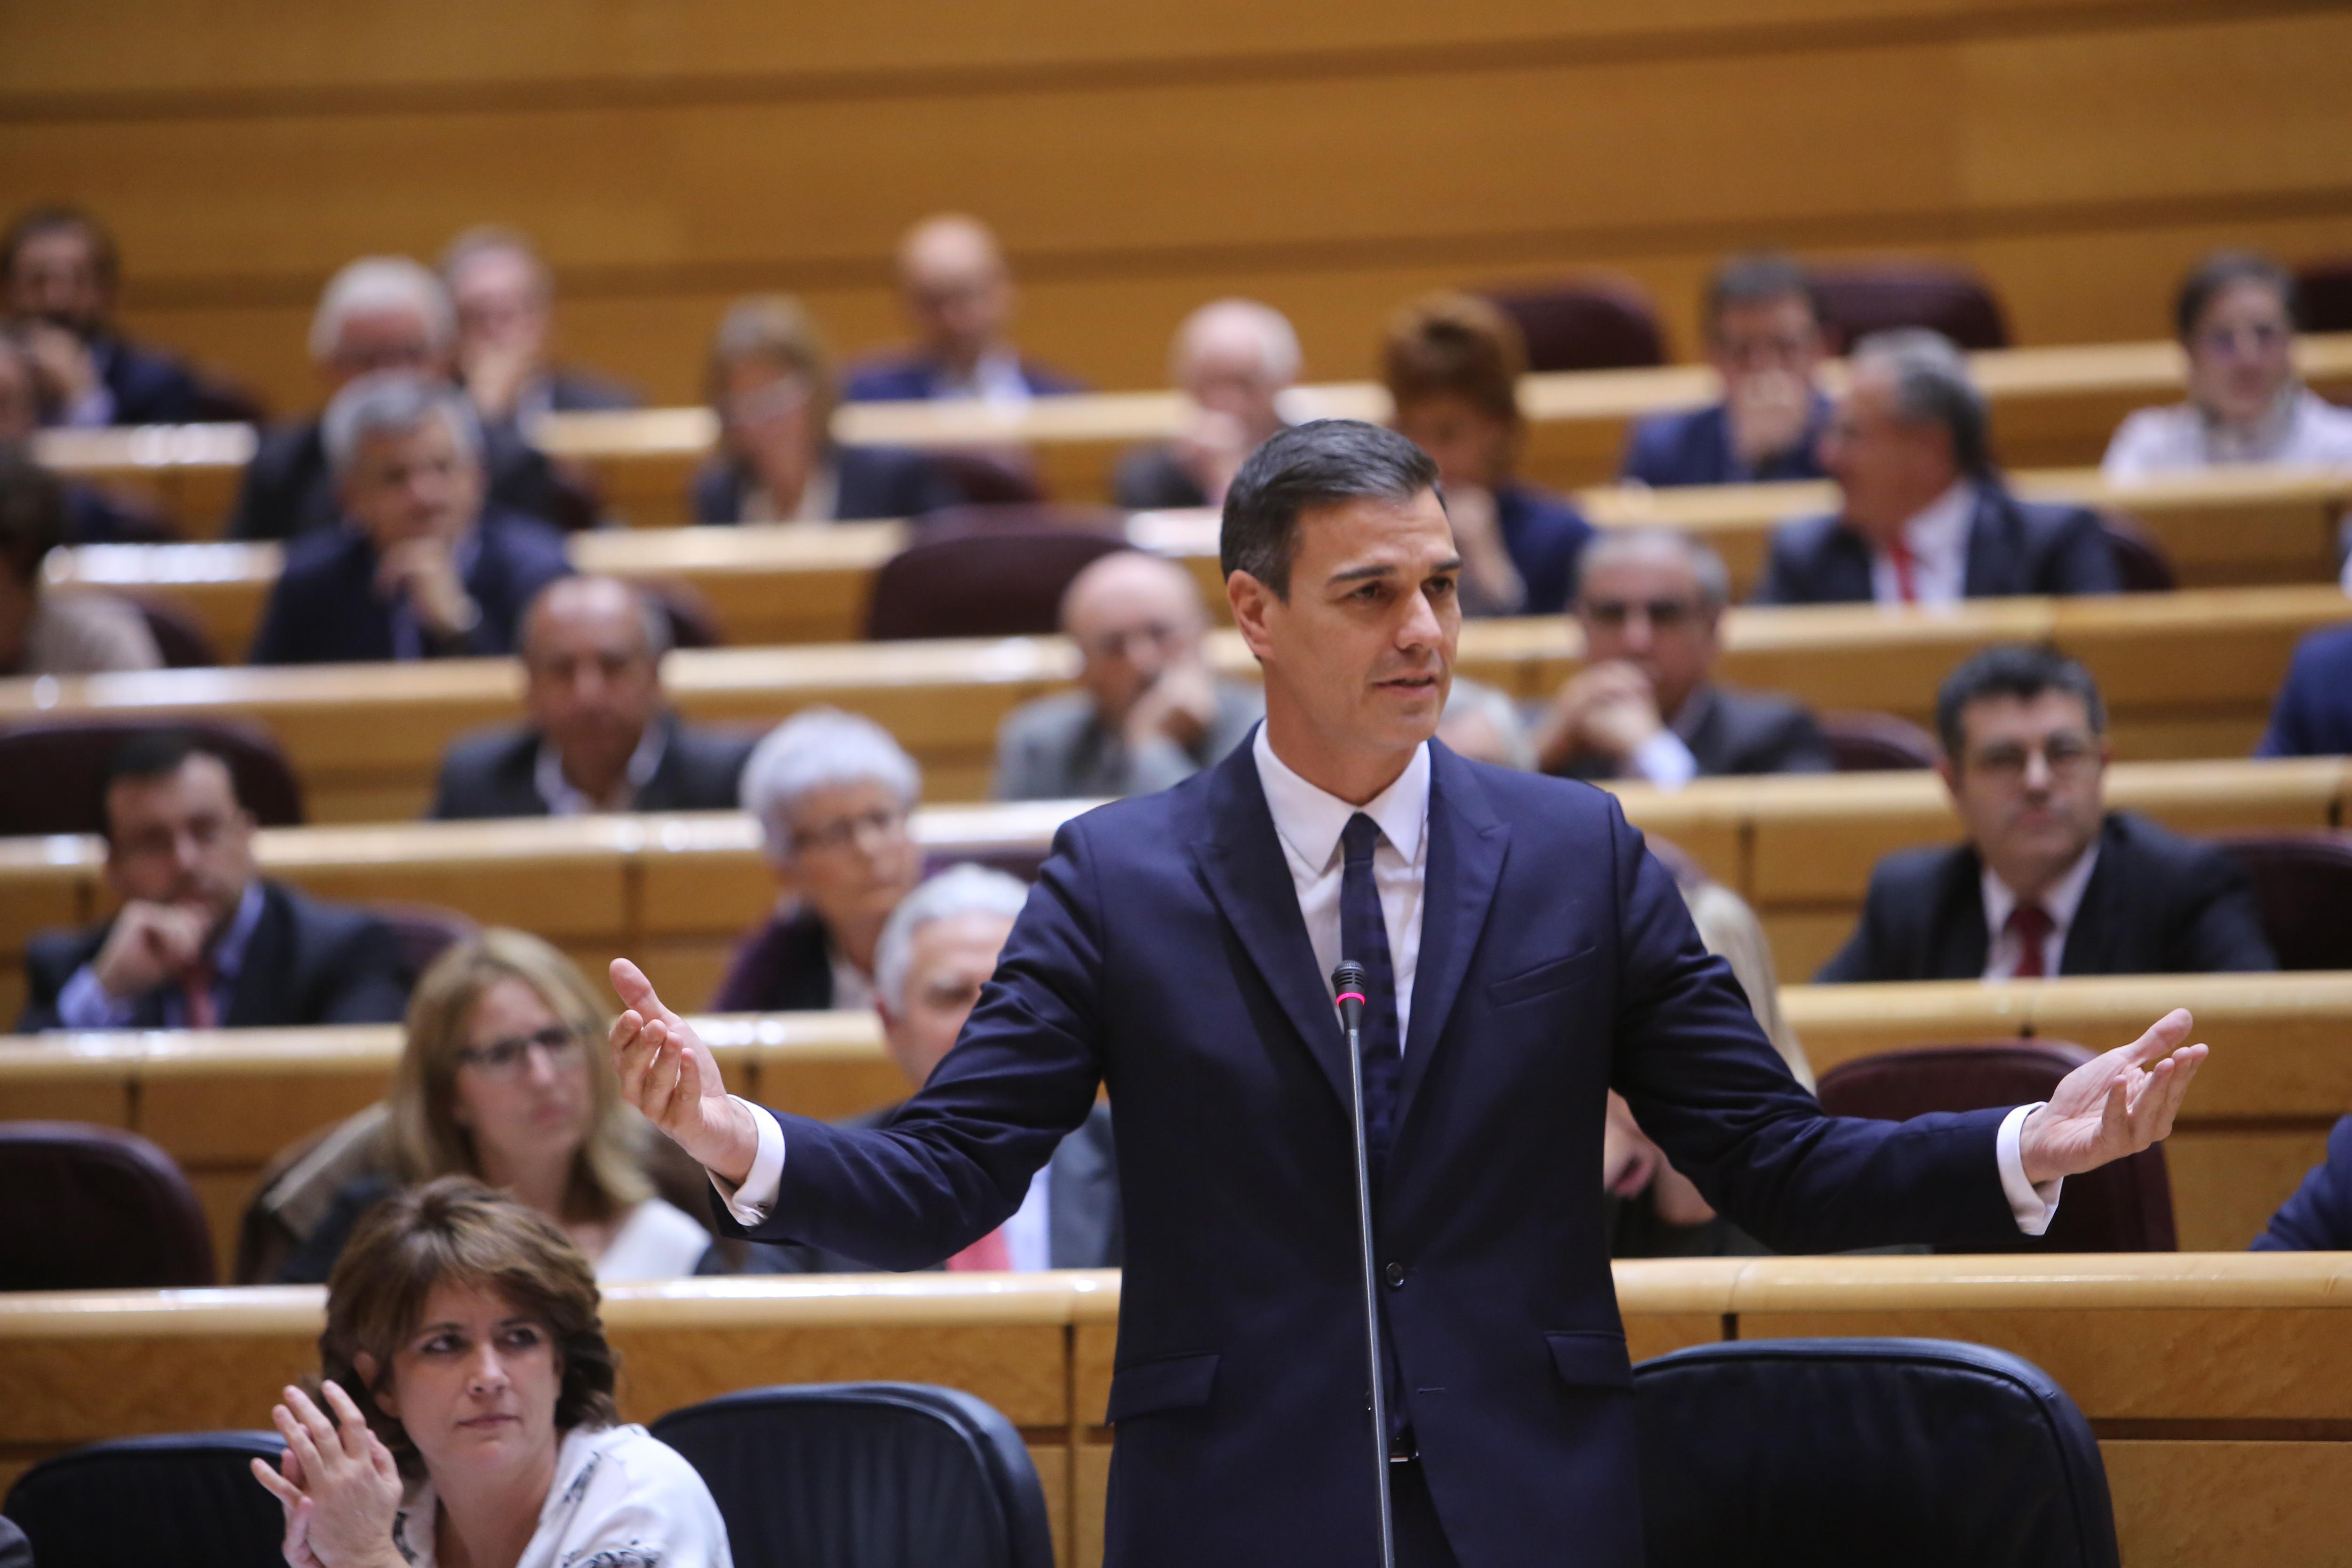 El presidente del Gobierno Pedro Sánchez durante la respuesta a Ignacio Cosidó en el Senado - Ricardo Rubio EP